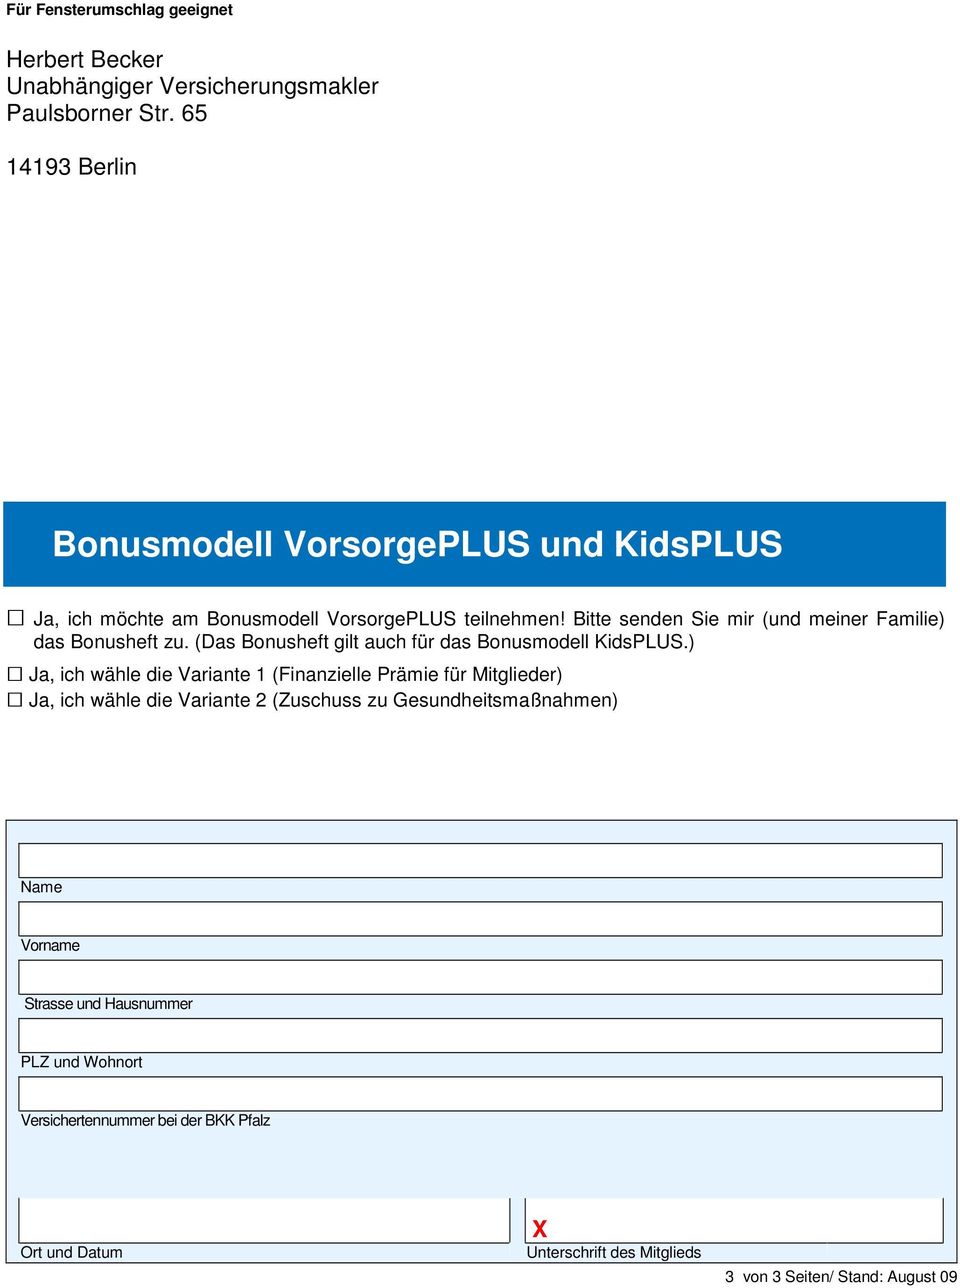 Bitte senden Sie mir (und meiner Familie) das Bonusheft zu. (Das Bonusheft gilt auch für das Bonusmodell KidsPLUS.